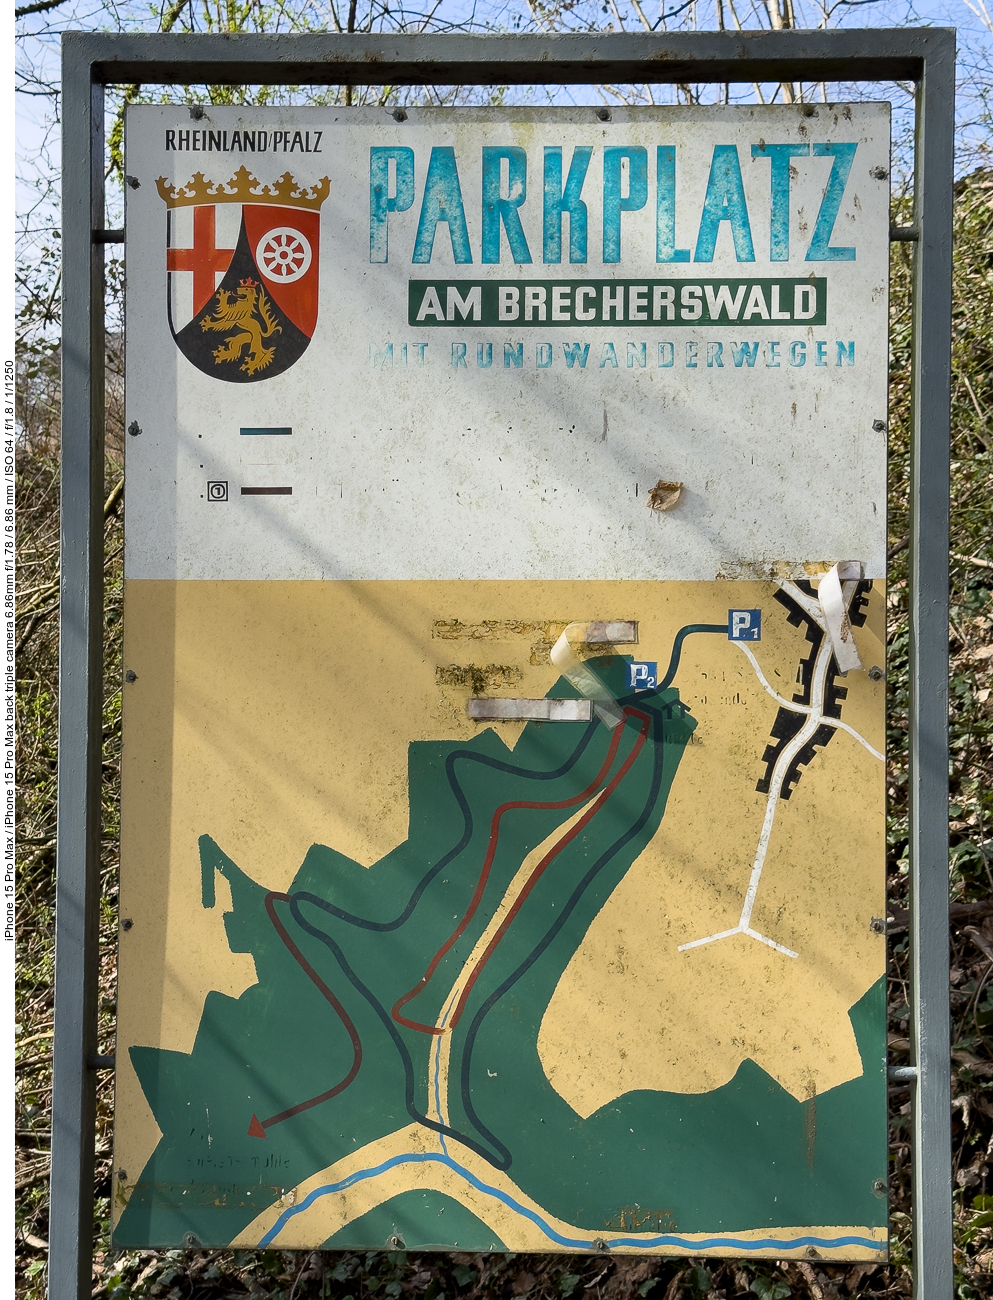 Wir starten am Parkplatz "Am Brecherswald" bei Schmitshausen